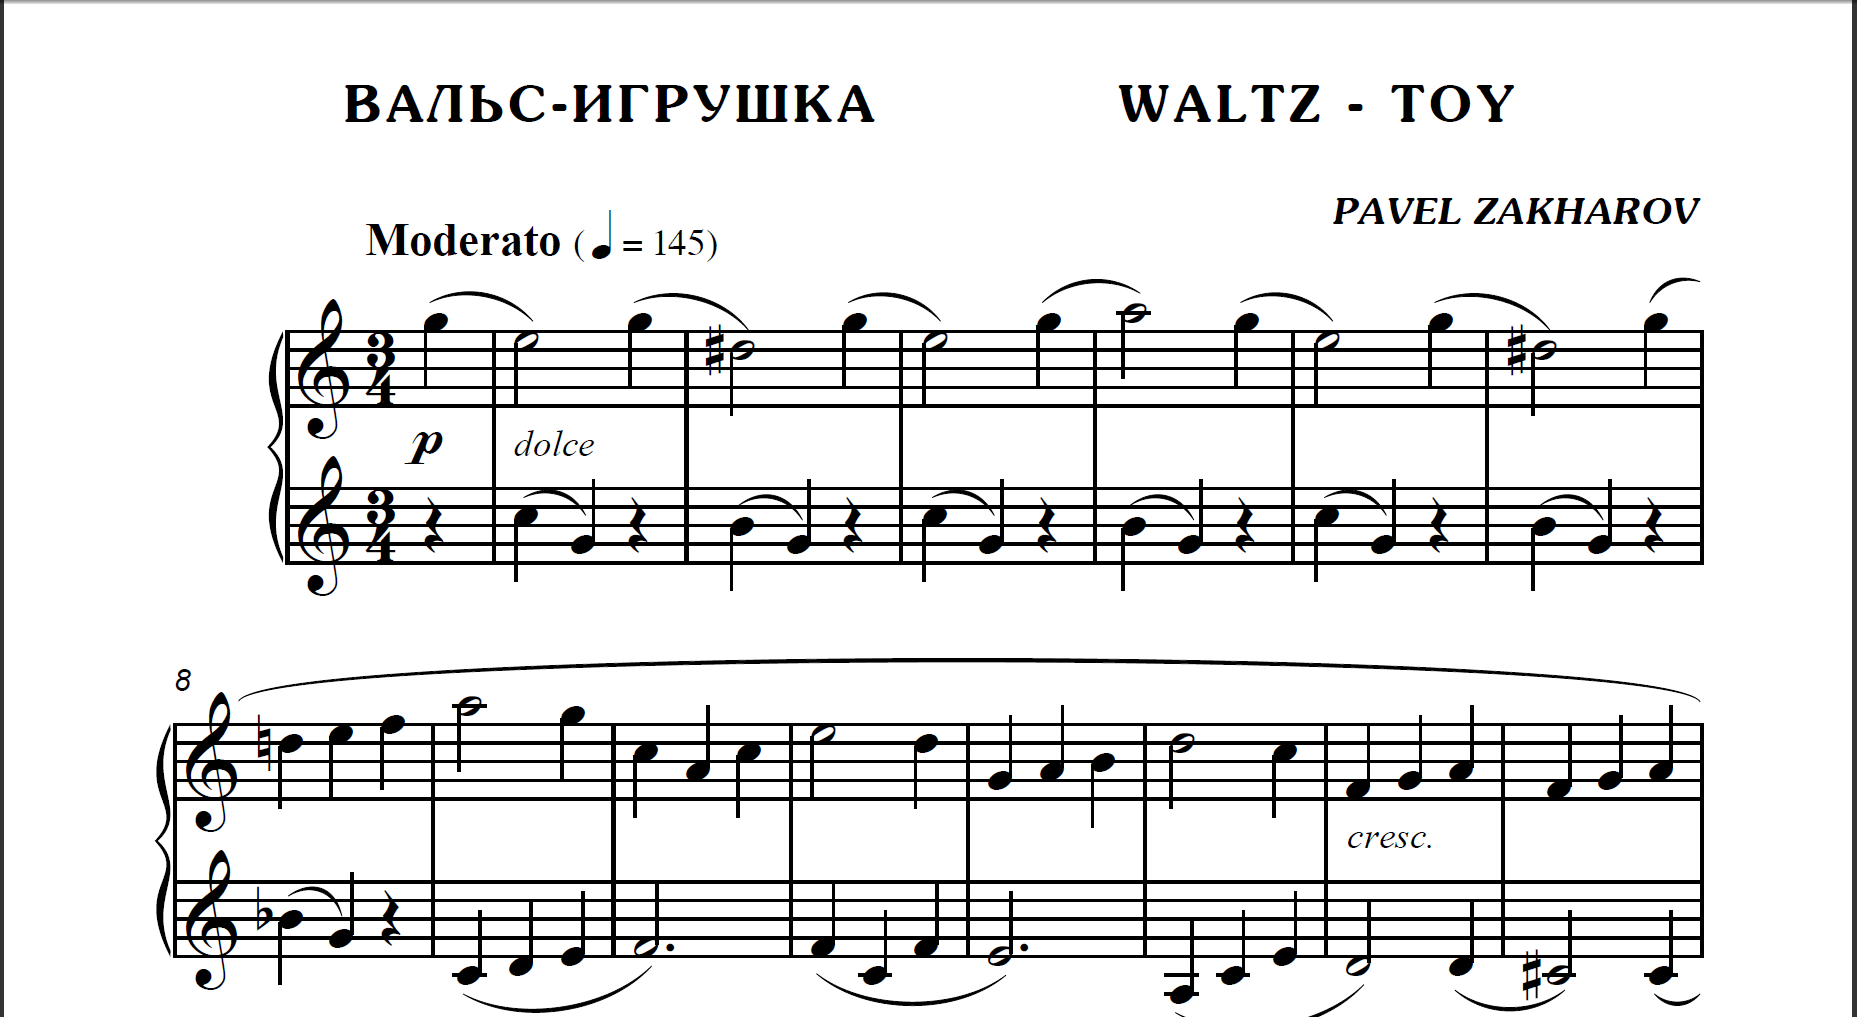 1s04 Waltz-Toy, PAVEL ZAKHAROV / piano